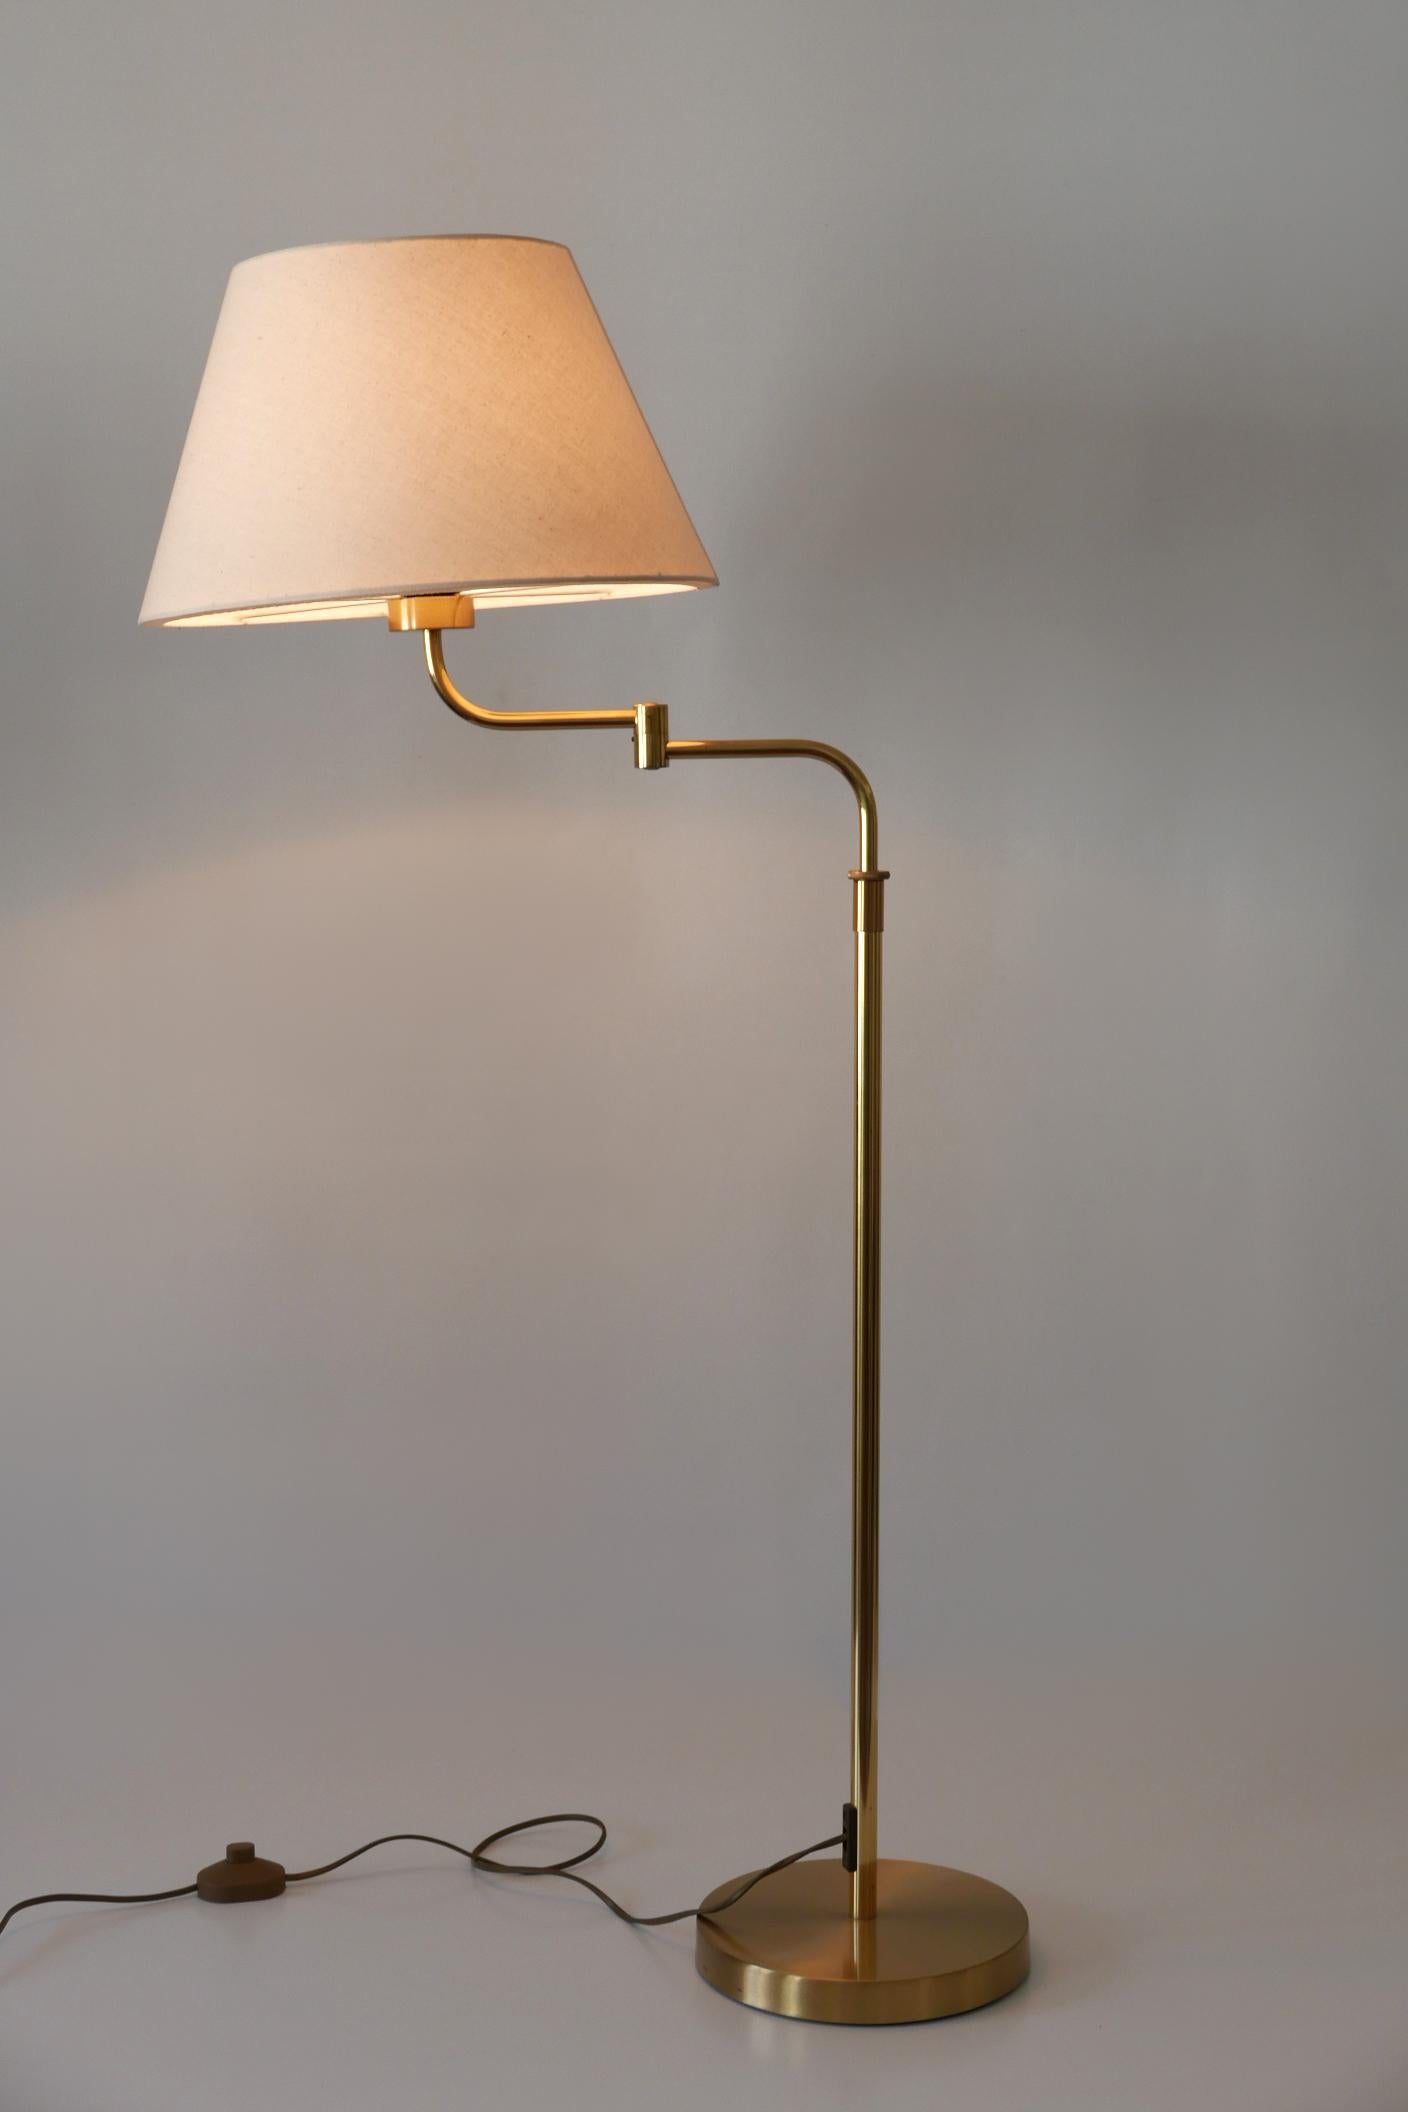 Adjustable Vintage Floor Lamp or Reading Light by Sölken Leuchten Germany 1980s For Sale 9